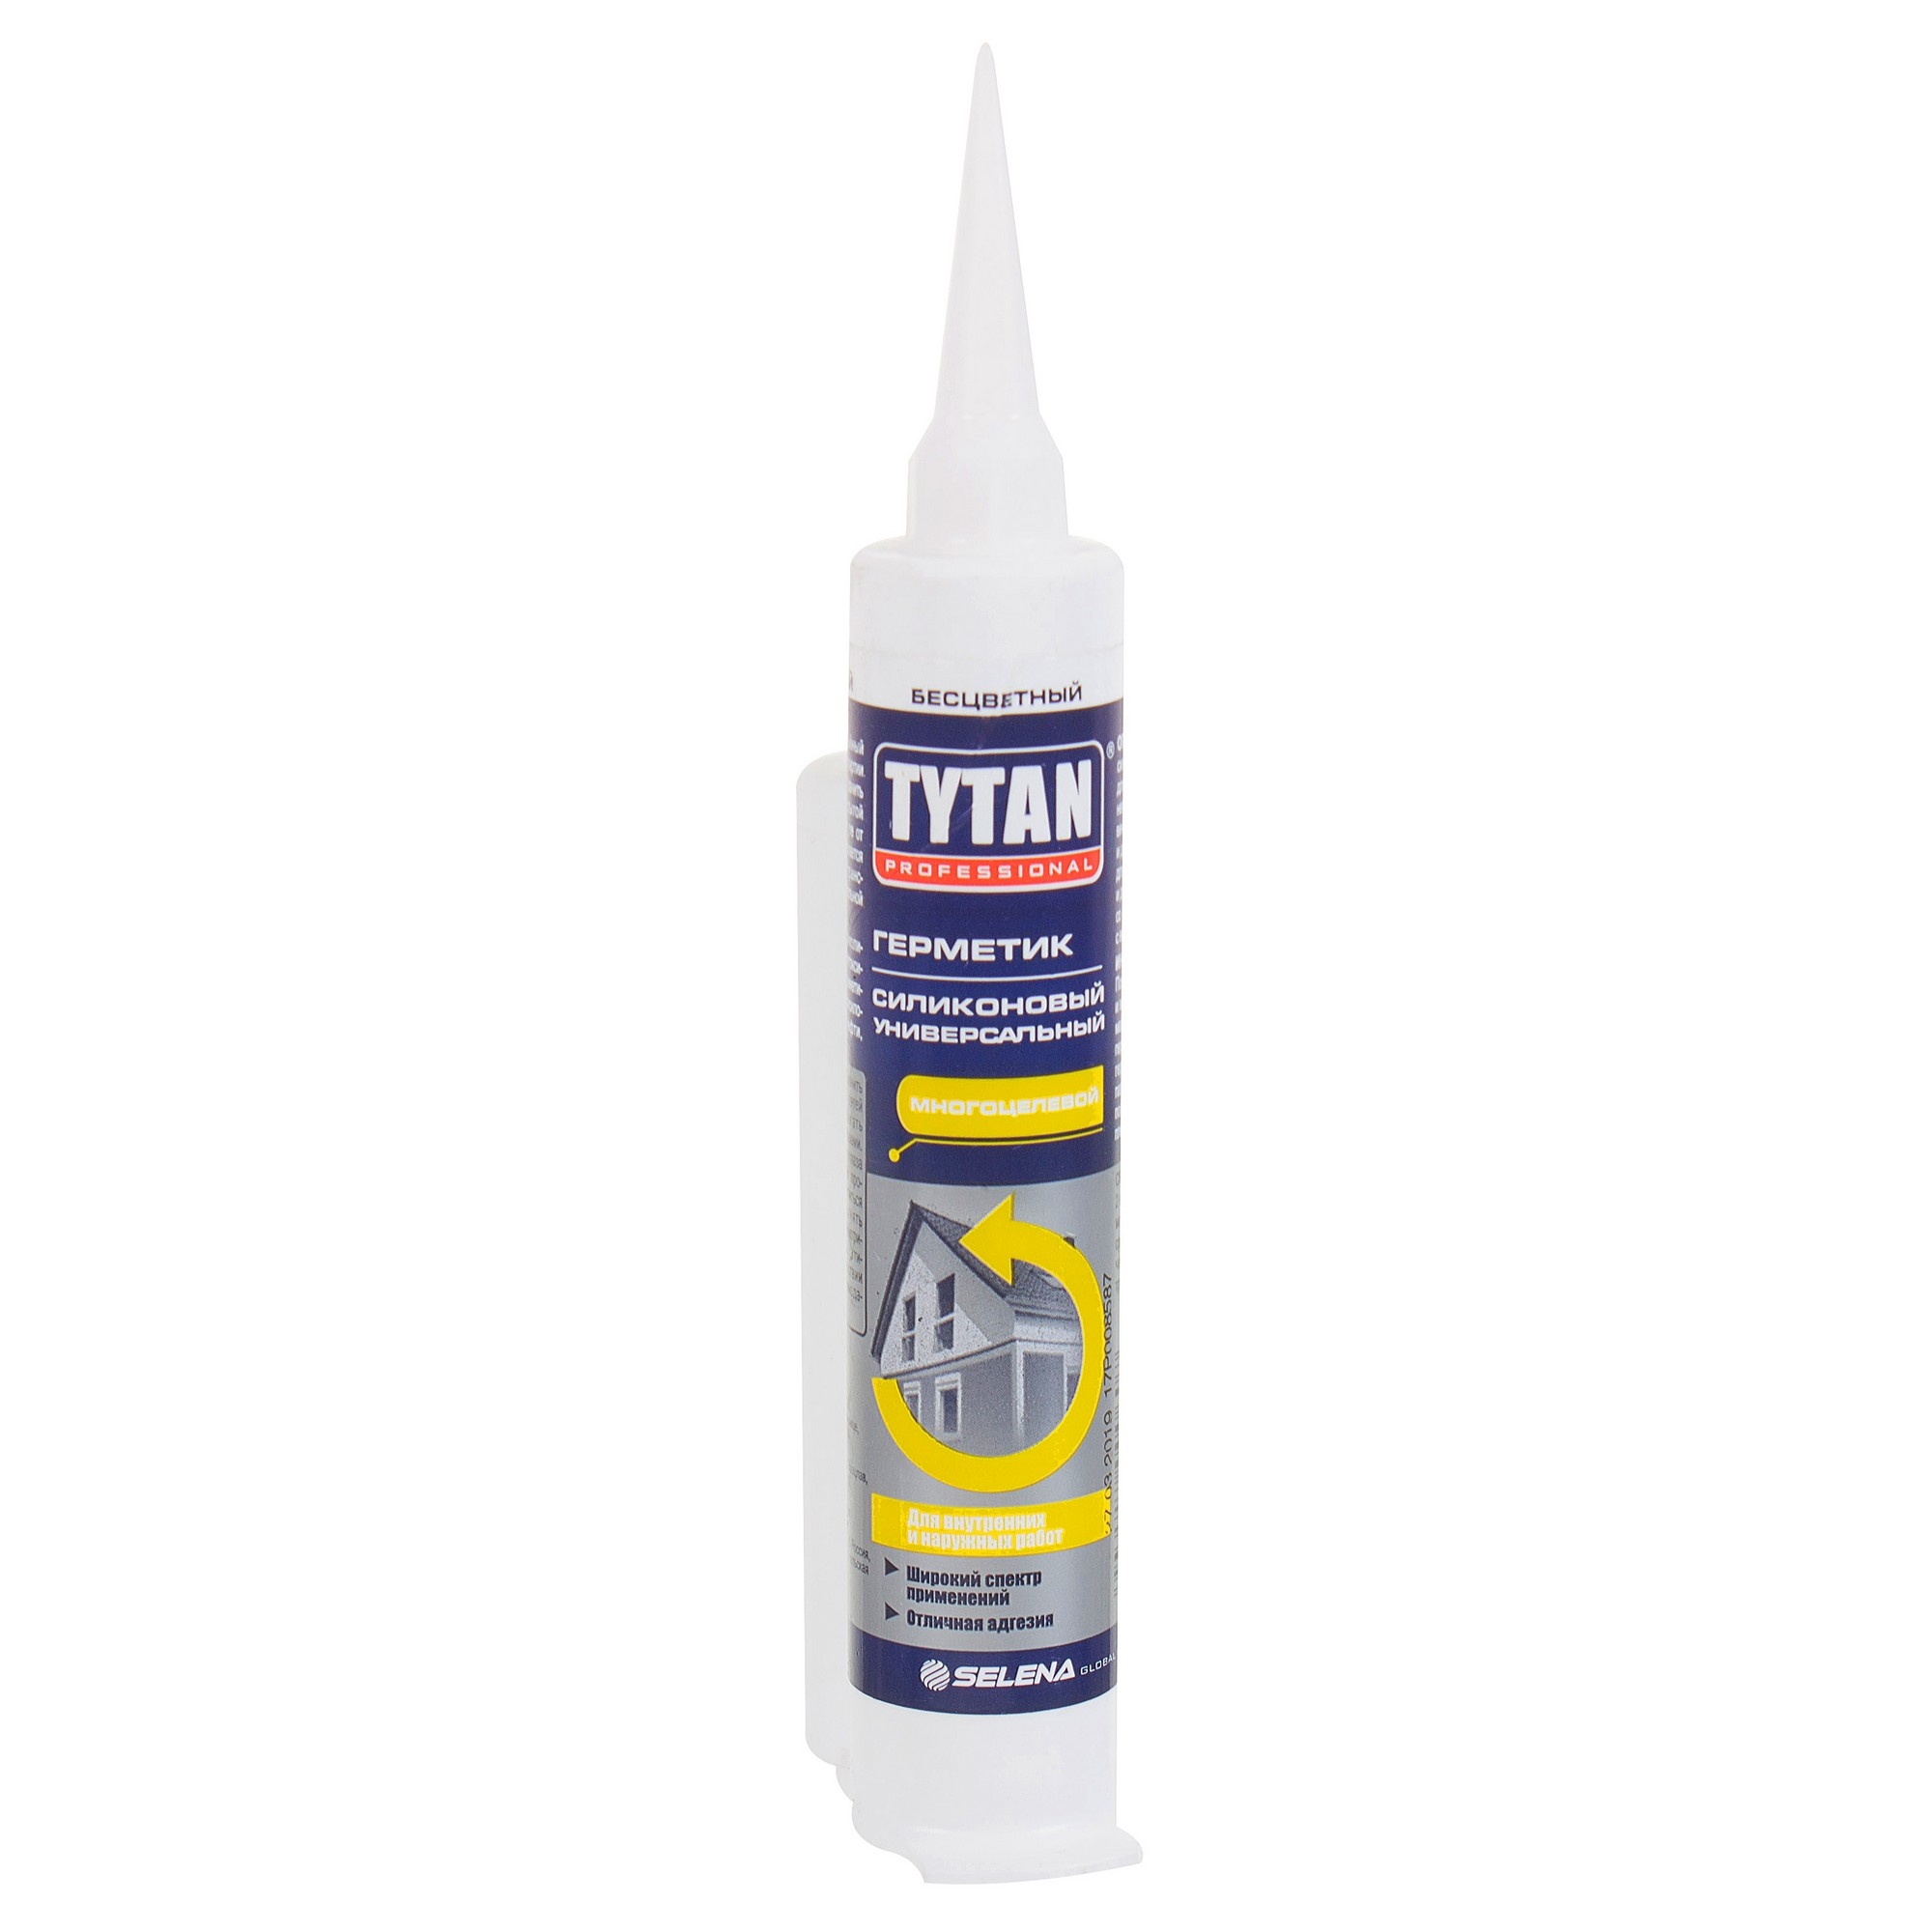  Tytan Professional силиконовый универсальный бесцветный, 80 мл .